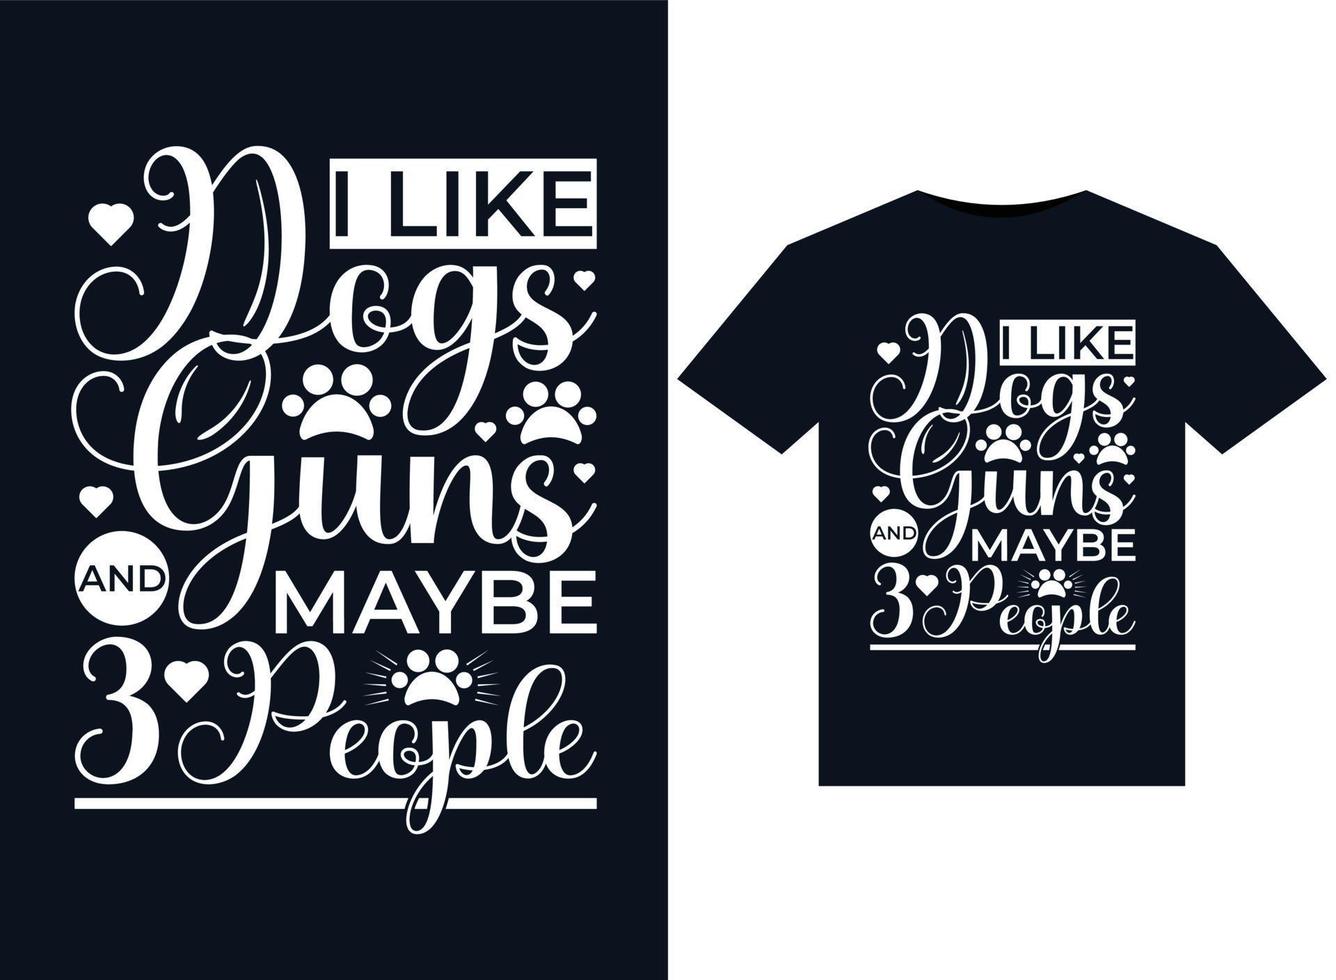 jag tycka om hundar guns och kanske 3 människor illustrationer för tryckfärdig t-tröjor design vektor